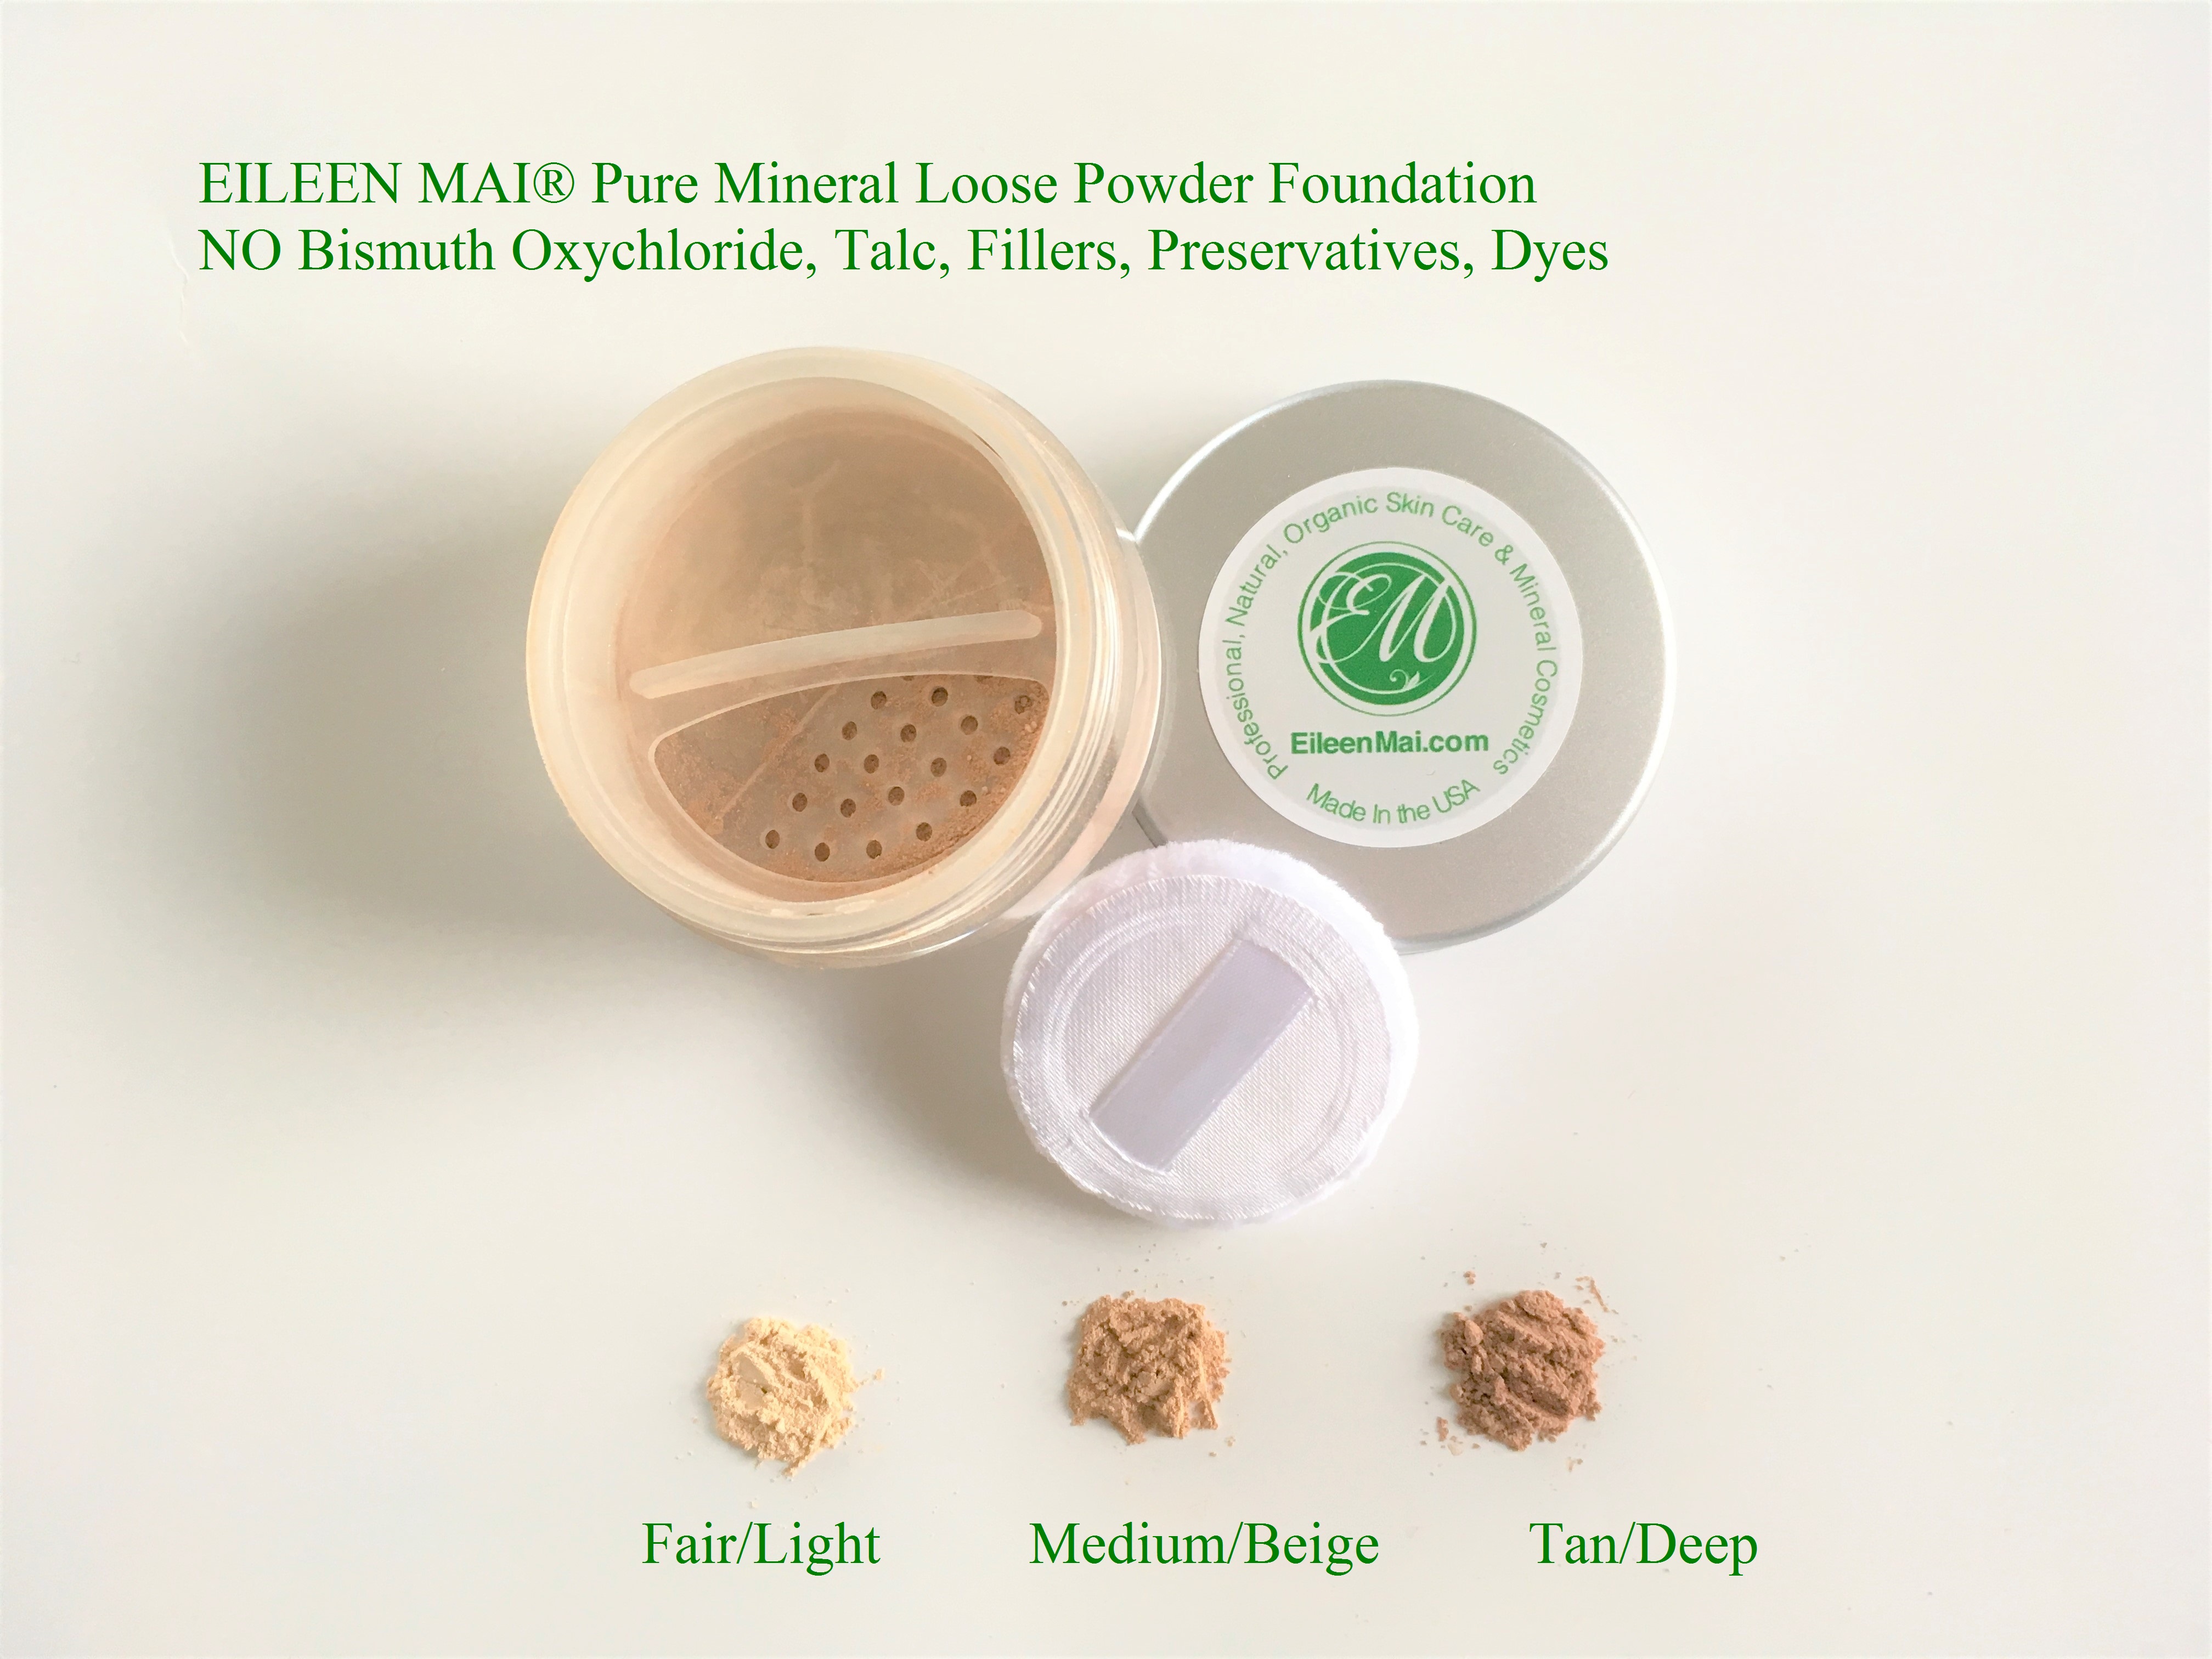 Phấn nền khoáng dạng bột Natural Silky Skin Loose Mineral Powder Foundation